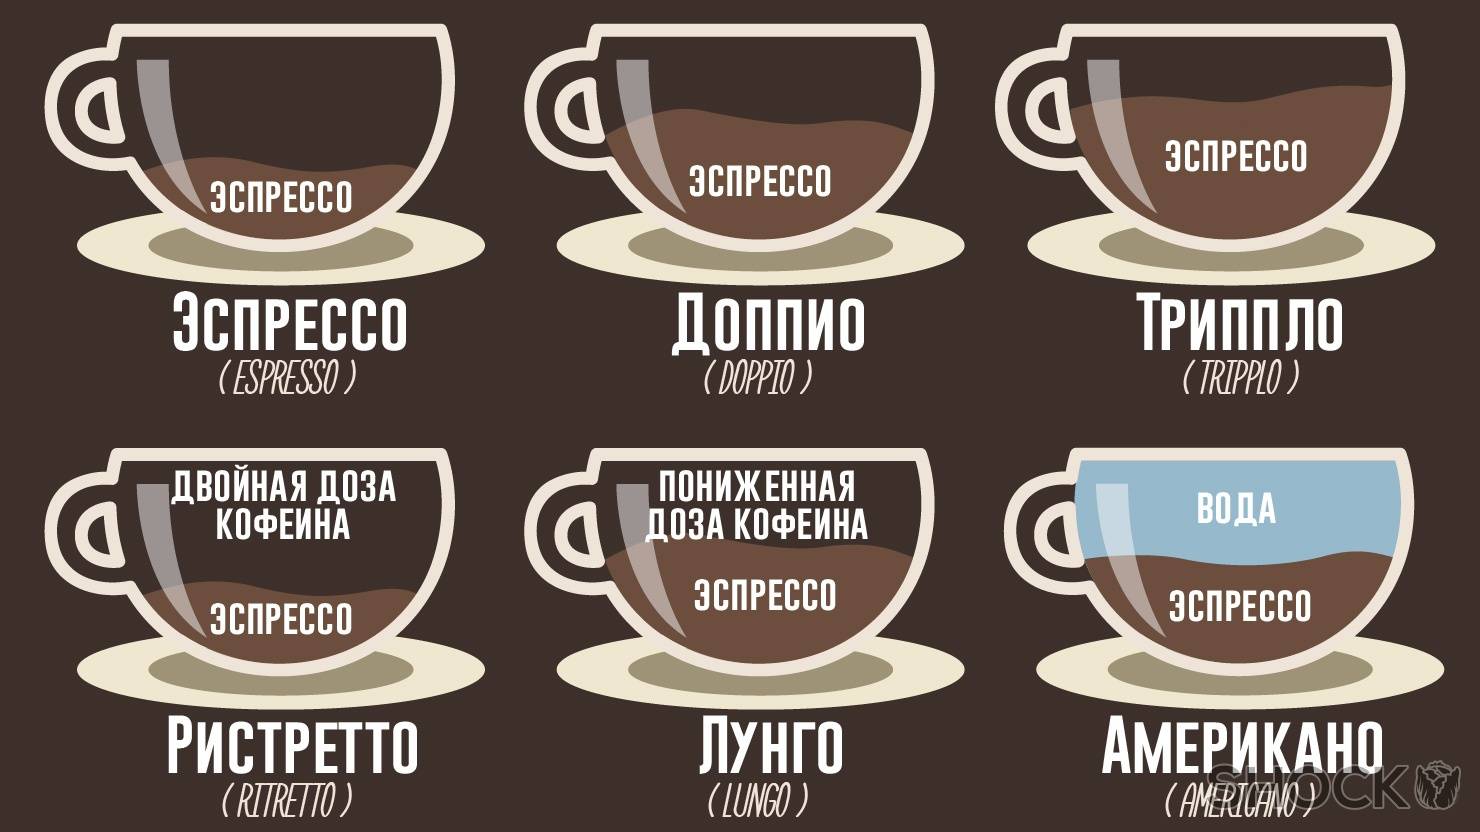 Белый кофе (ипохский): что это такое, история происхождения